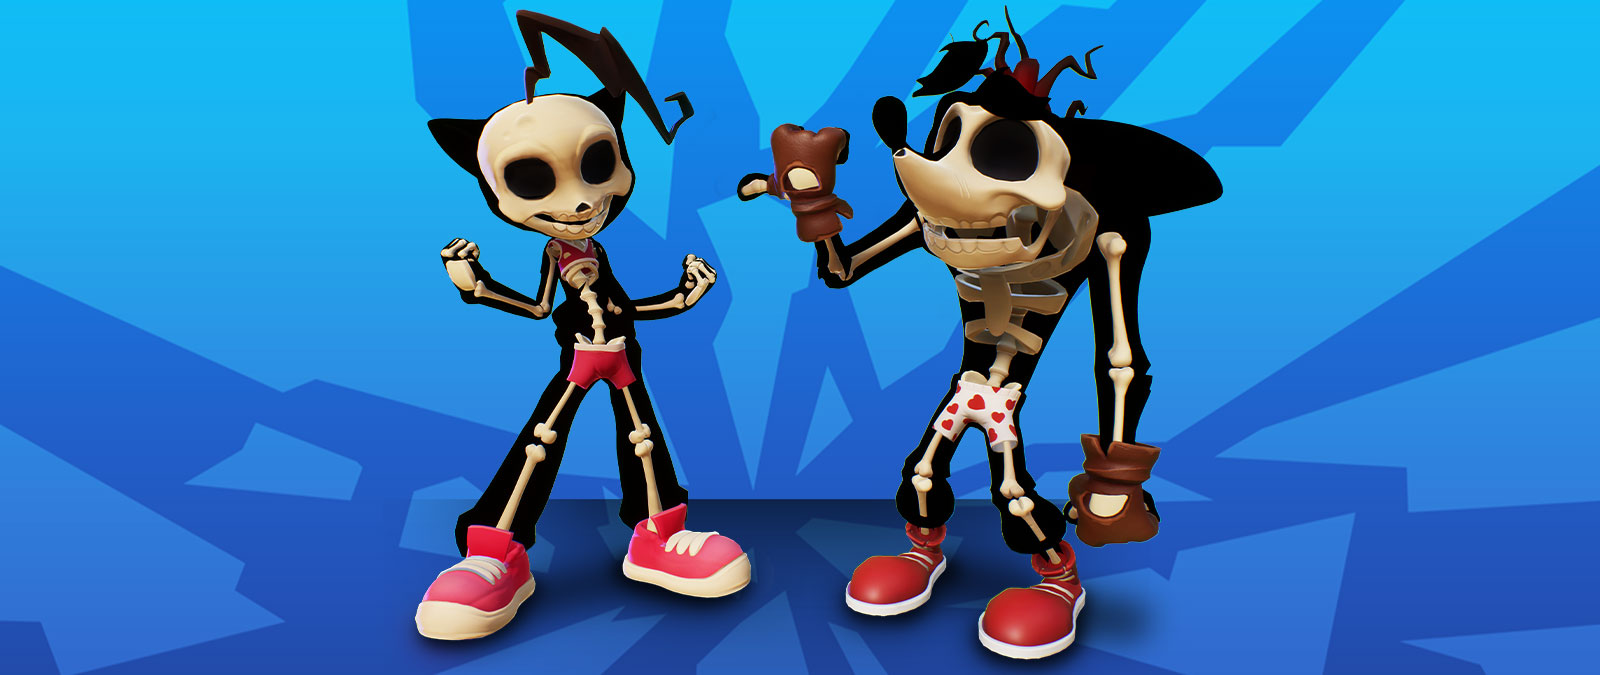 Los esqueletos de Crash y Coco con ropa interior puesta.